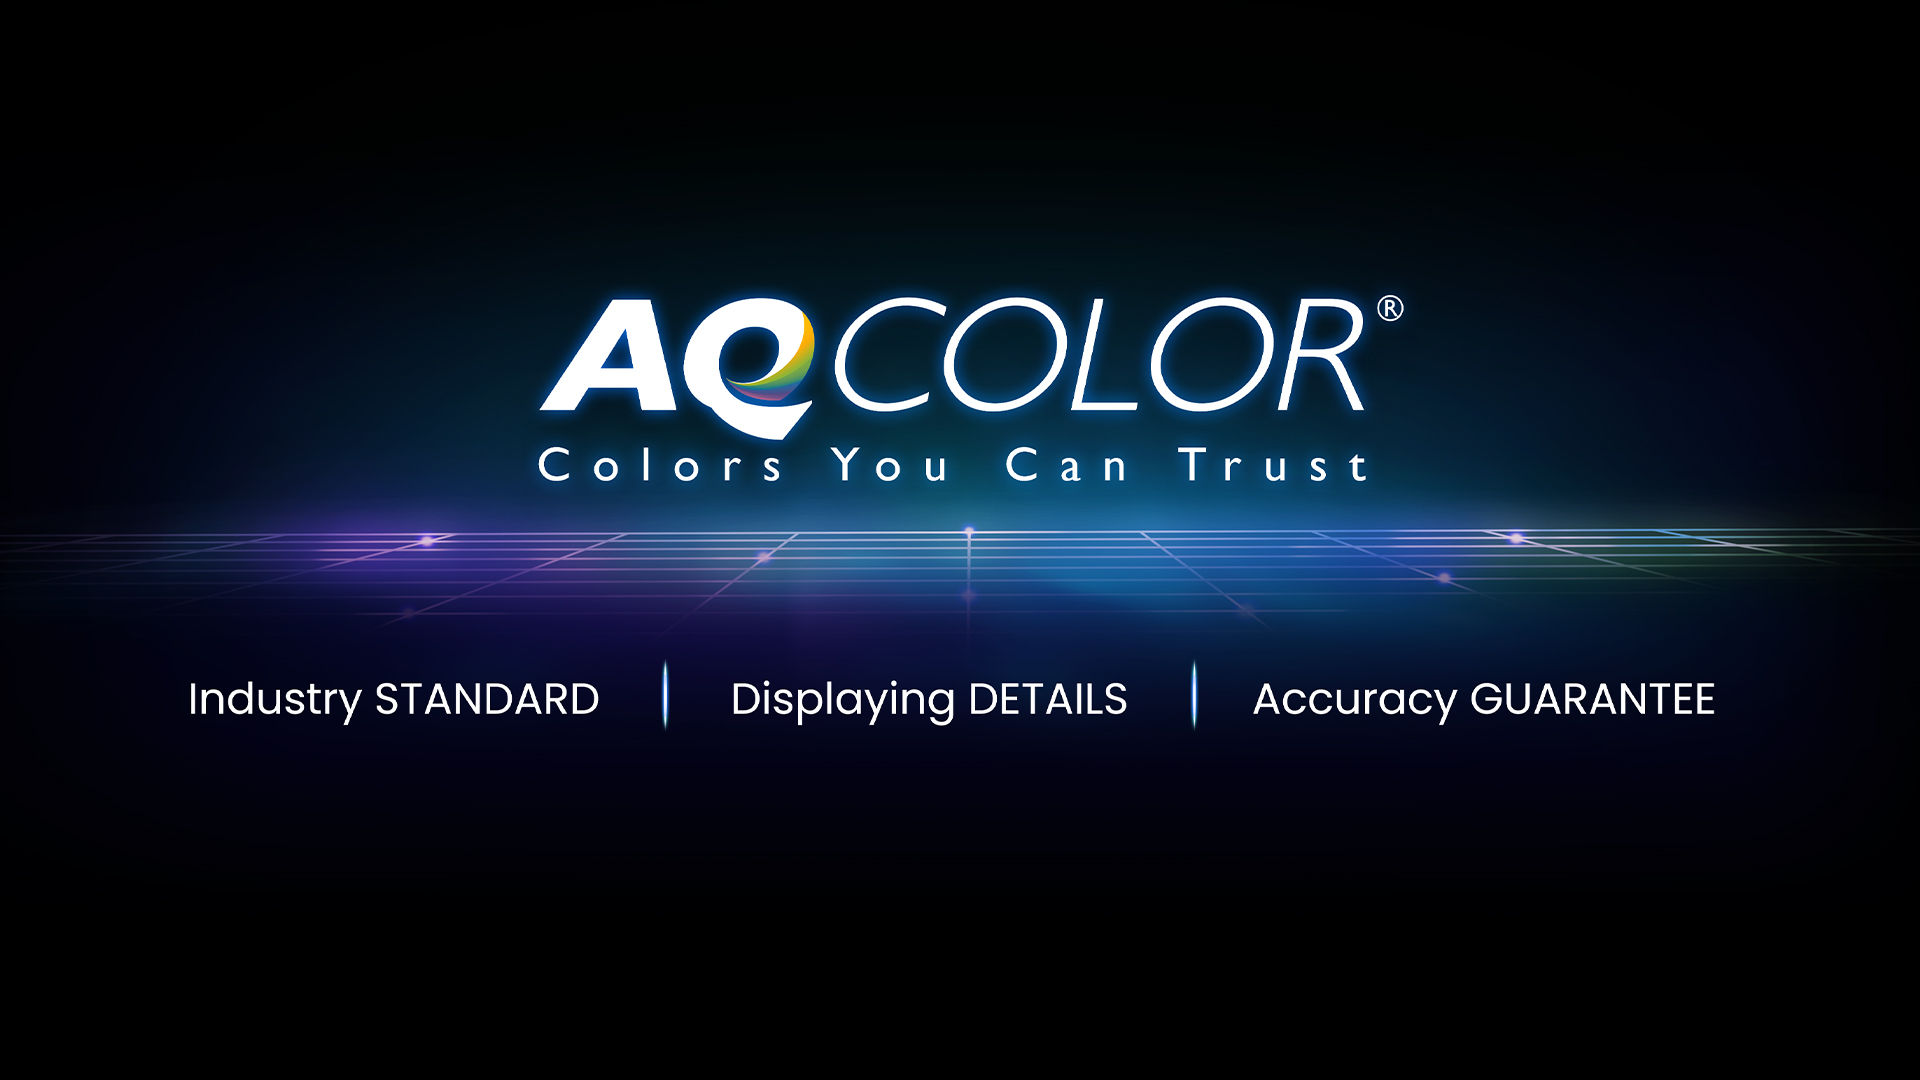 BenQ AQCOLOR technologie levert 'Accurate Reproduction'. Dit vertaalt zich naar de weergave van kleuren precies zoals ze bedoeld zijn te verschijnen. 